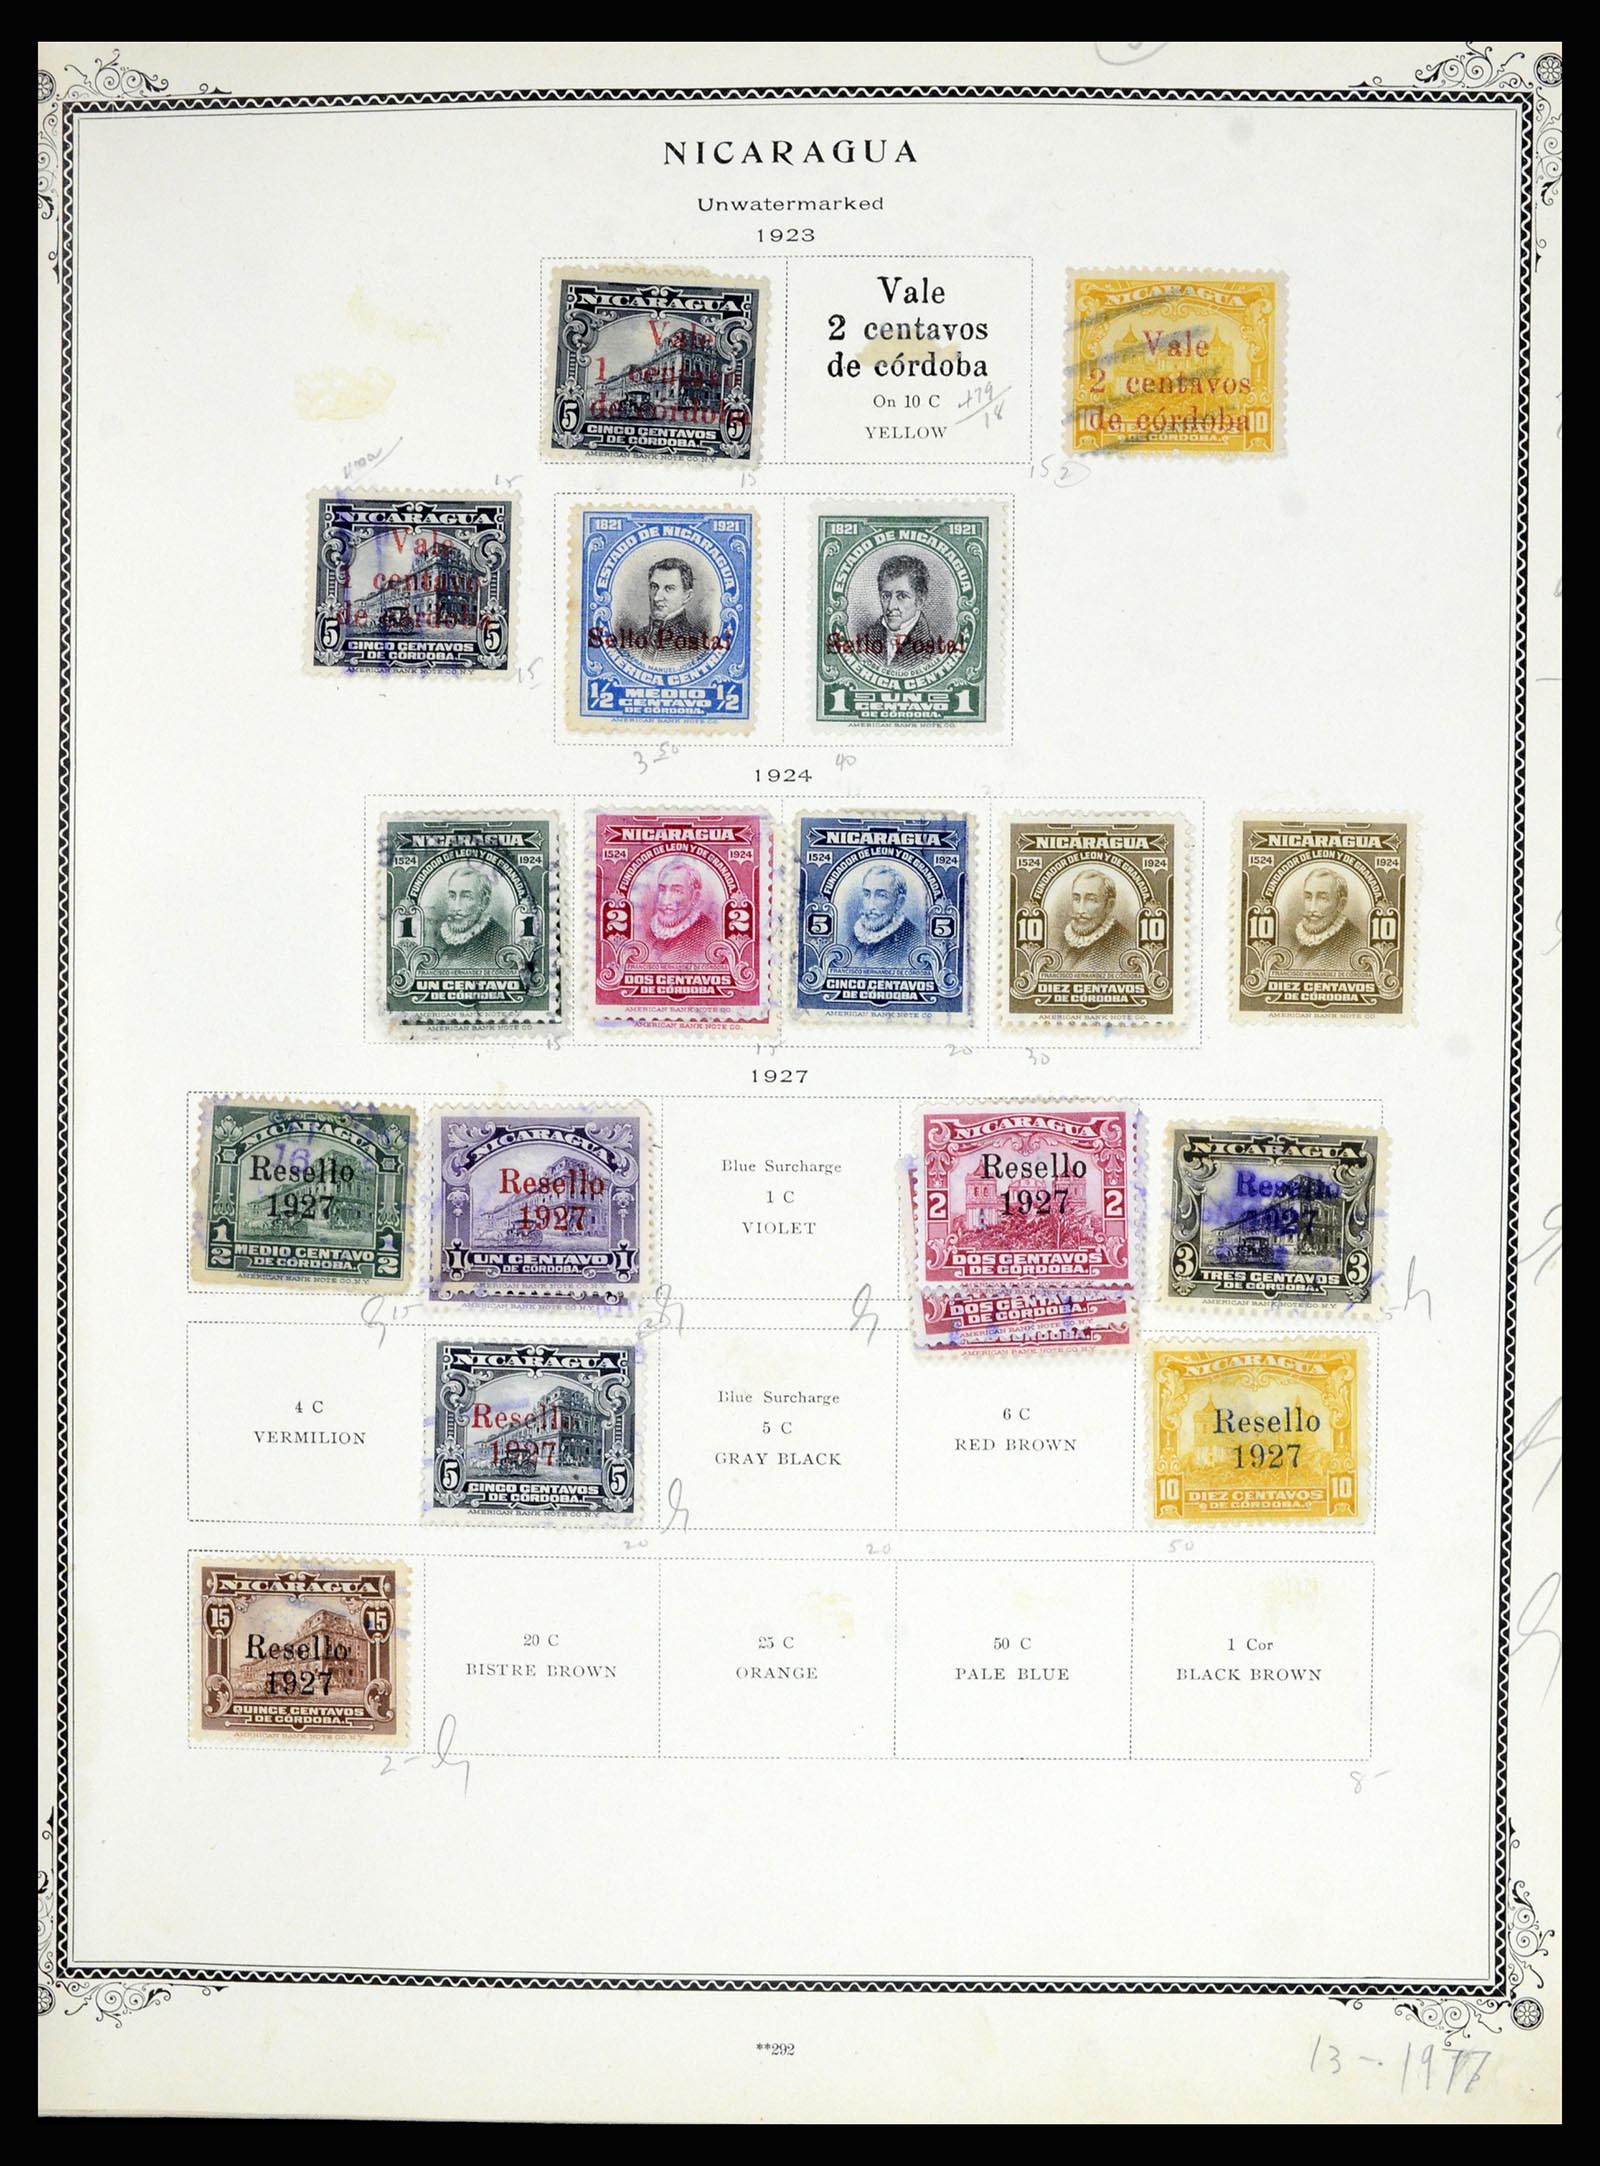 36494 074 - Stamp collection 36494 Nicaragua 1902-1945.